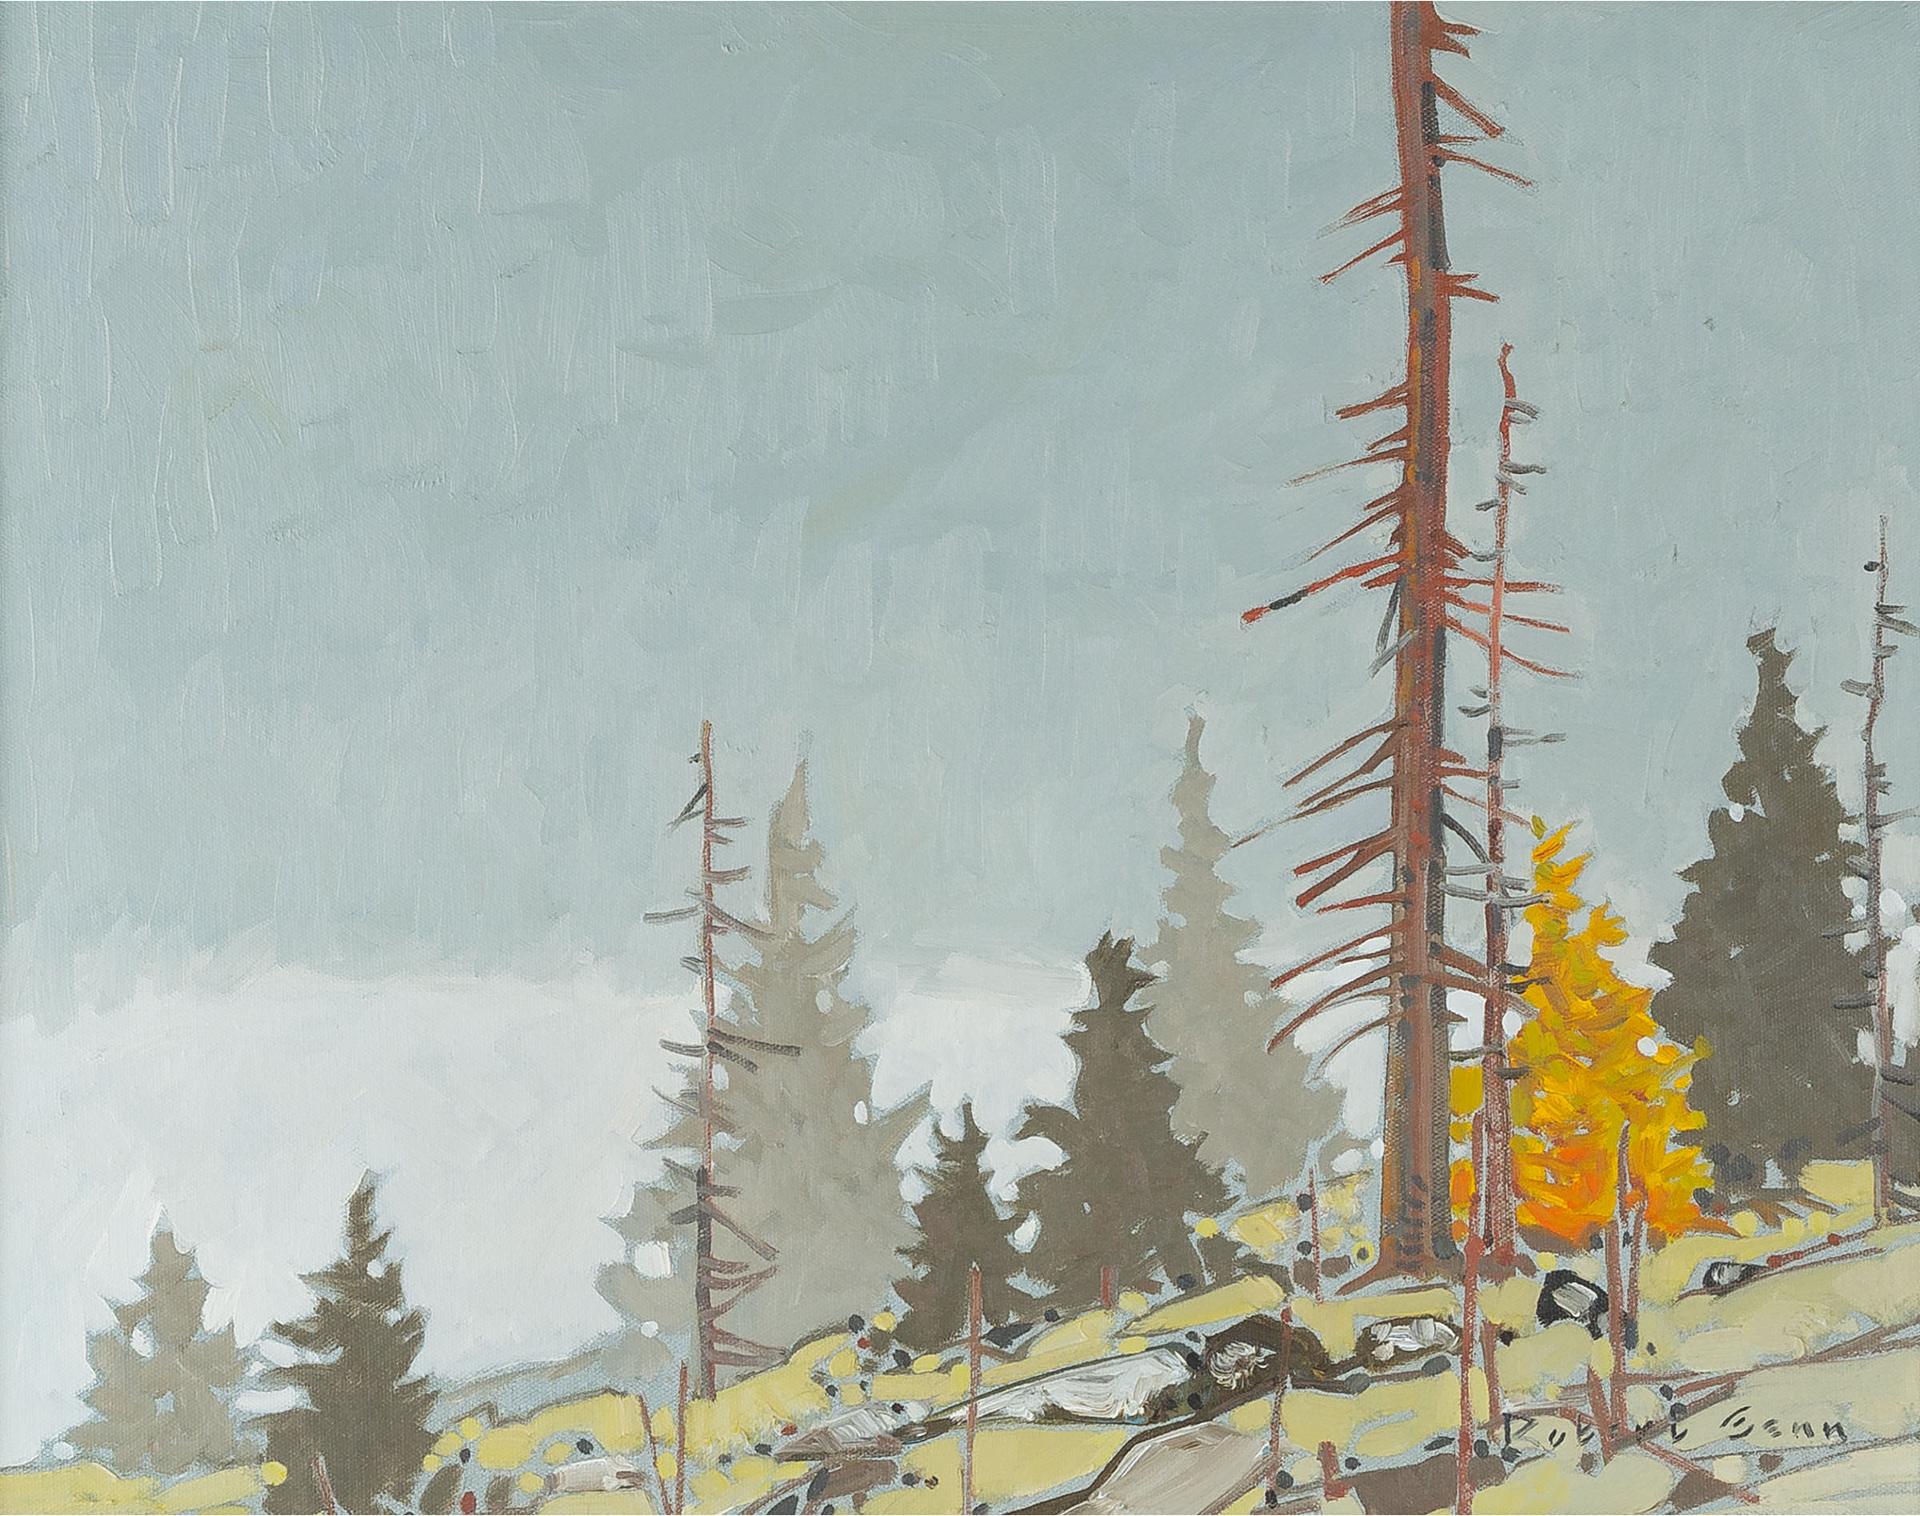 Robert Douglas Genn (1936-2014) - Cariboo Forest Fog, 1974